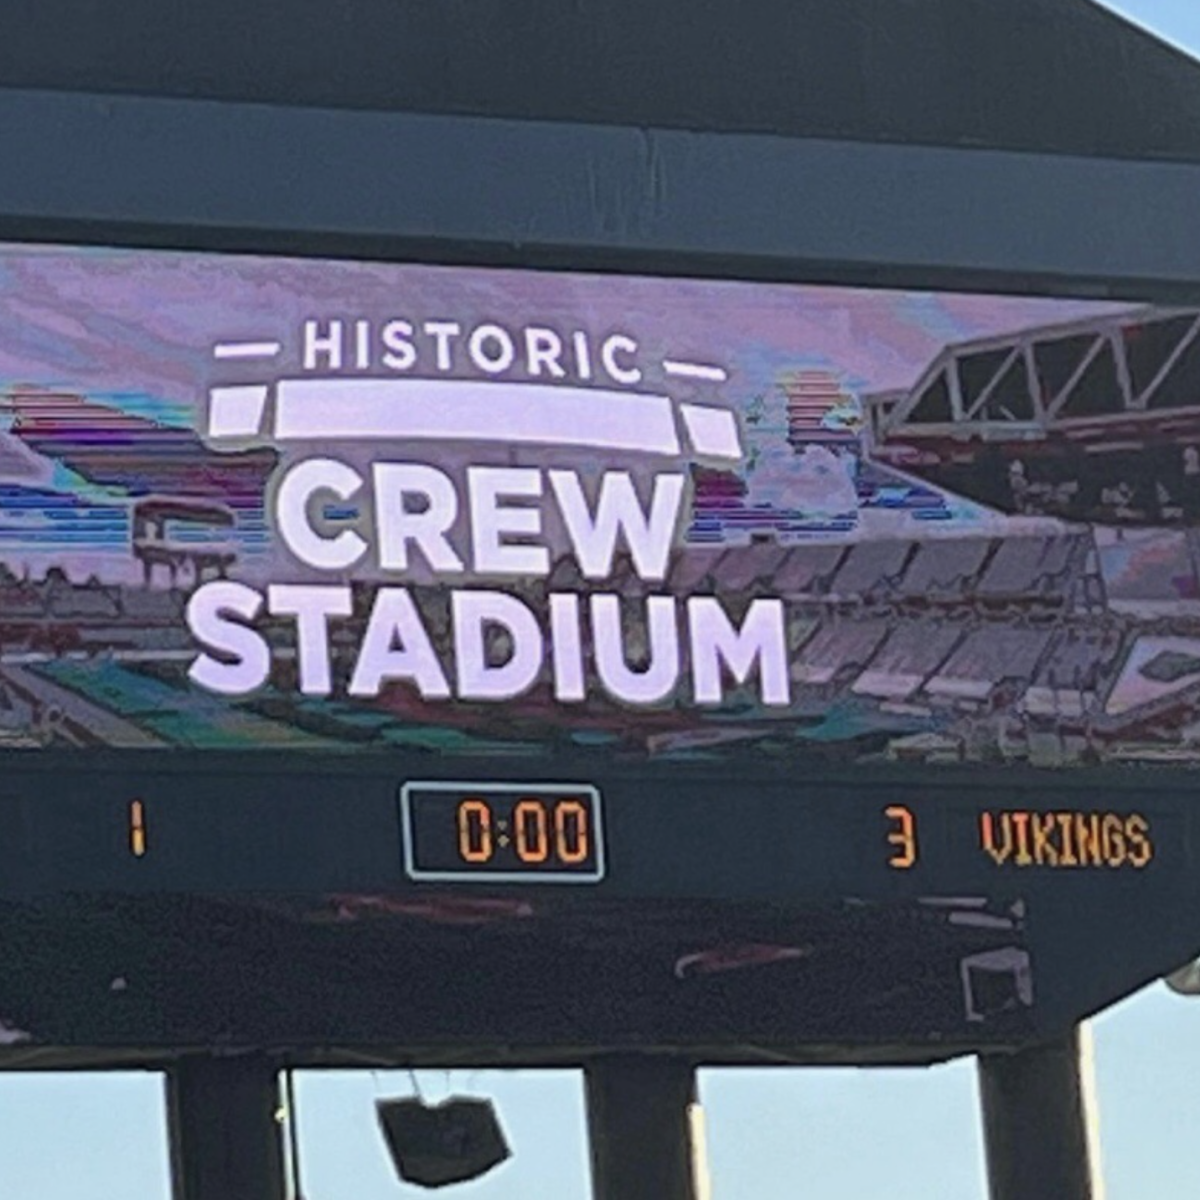 Columbus Crew win big in final game at Historic Crew Stadium